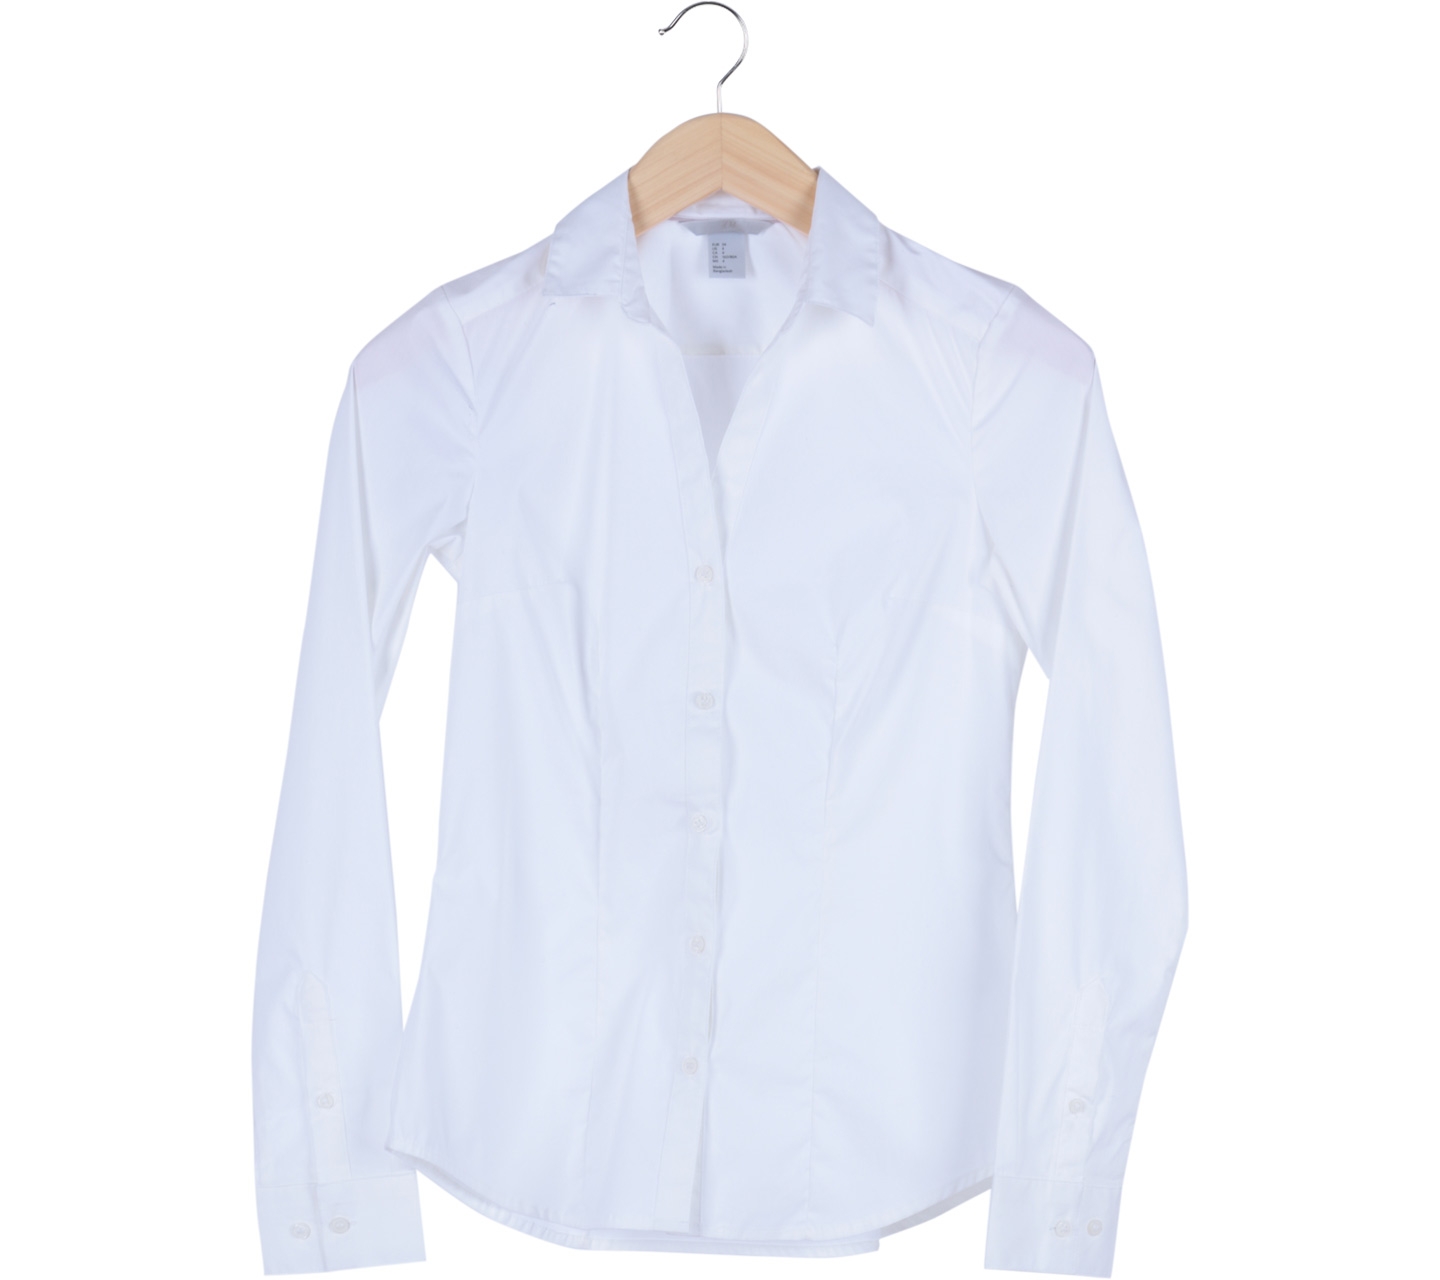 H&M White Basic Sleeve Shirt